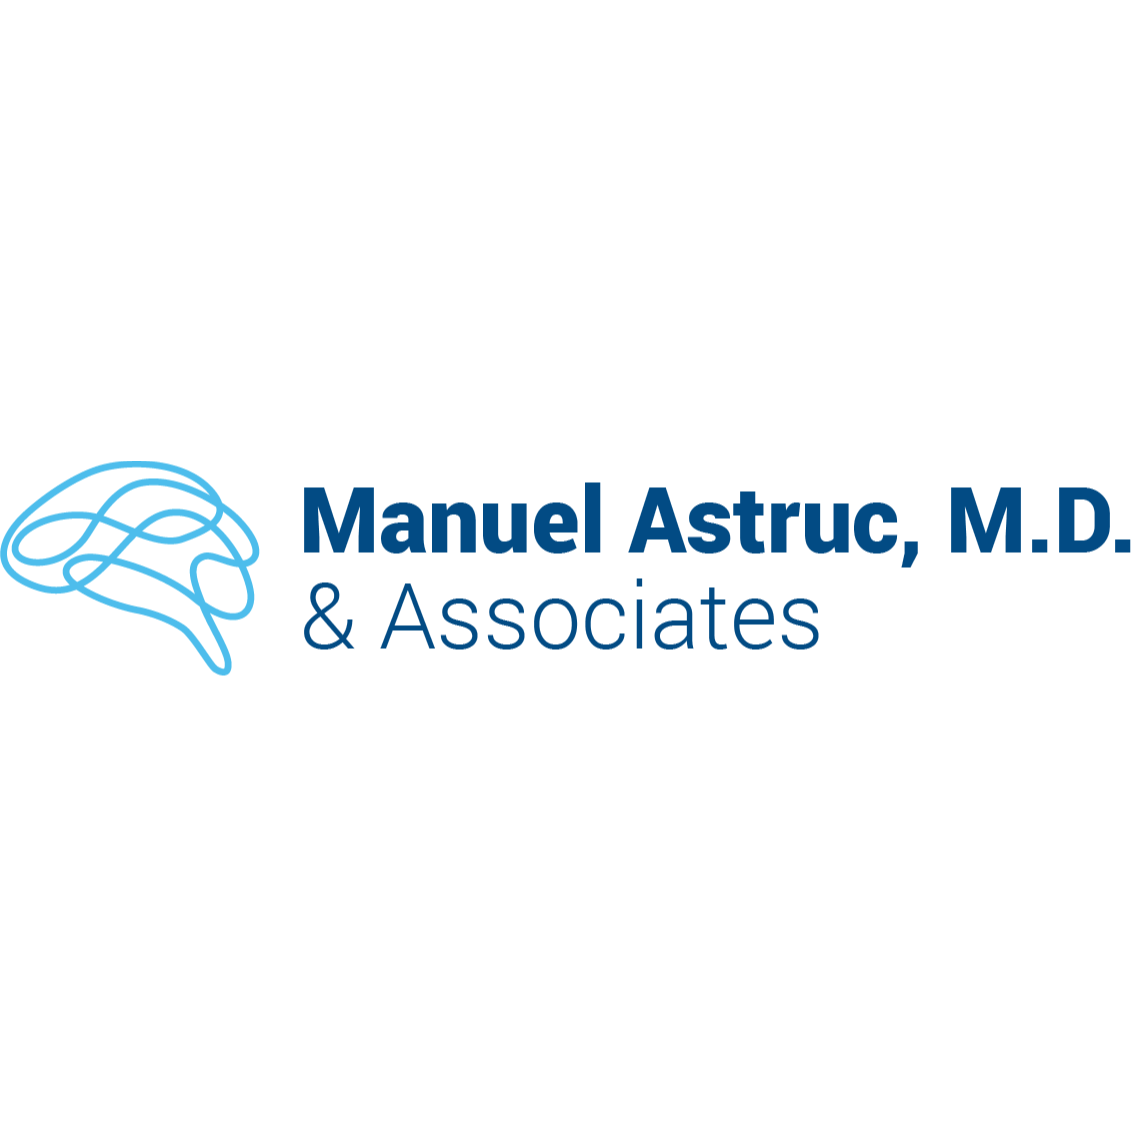 Manuel Astruc, M.D. & Associates